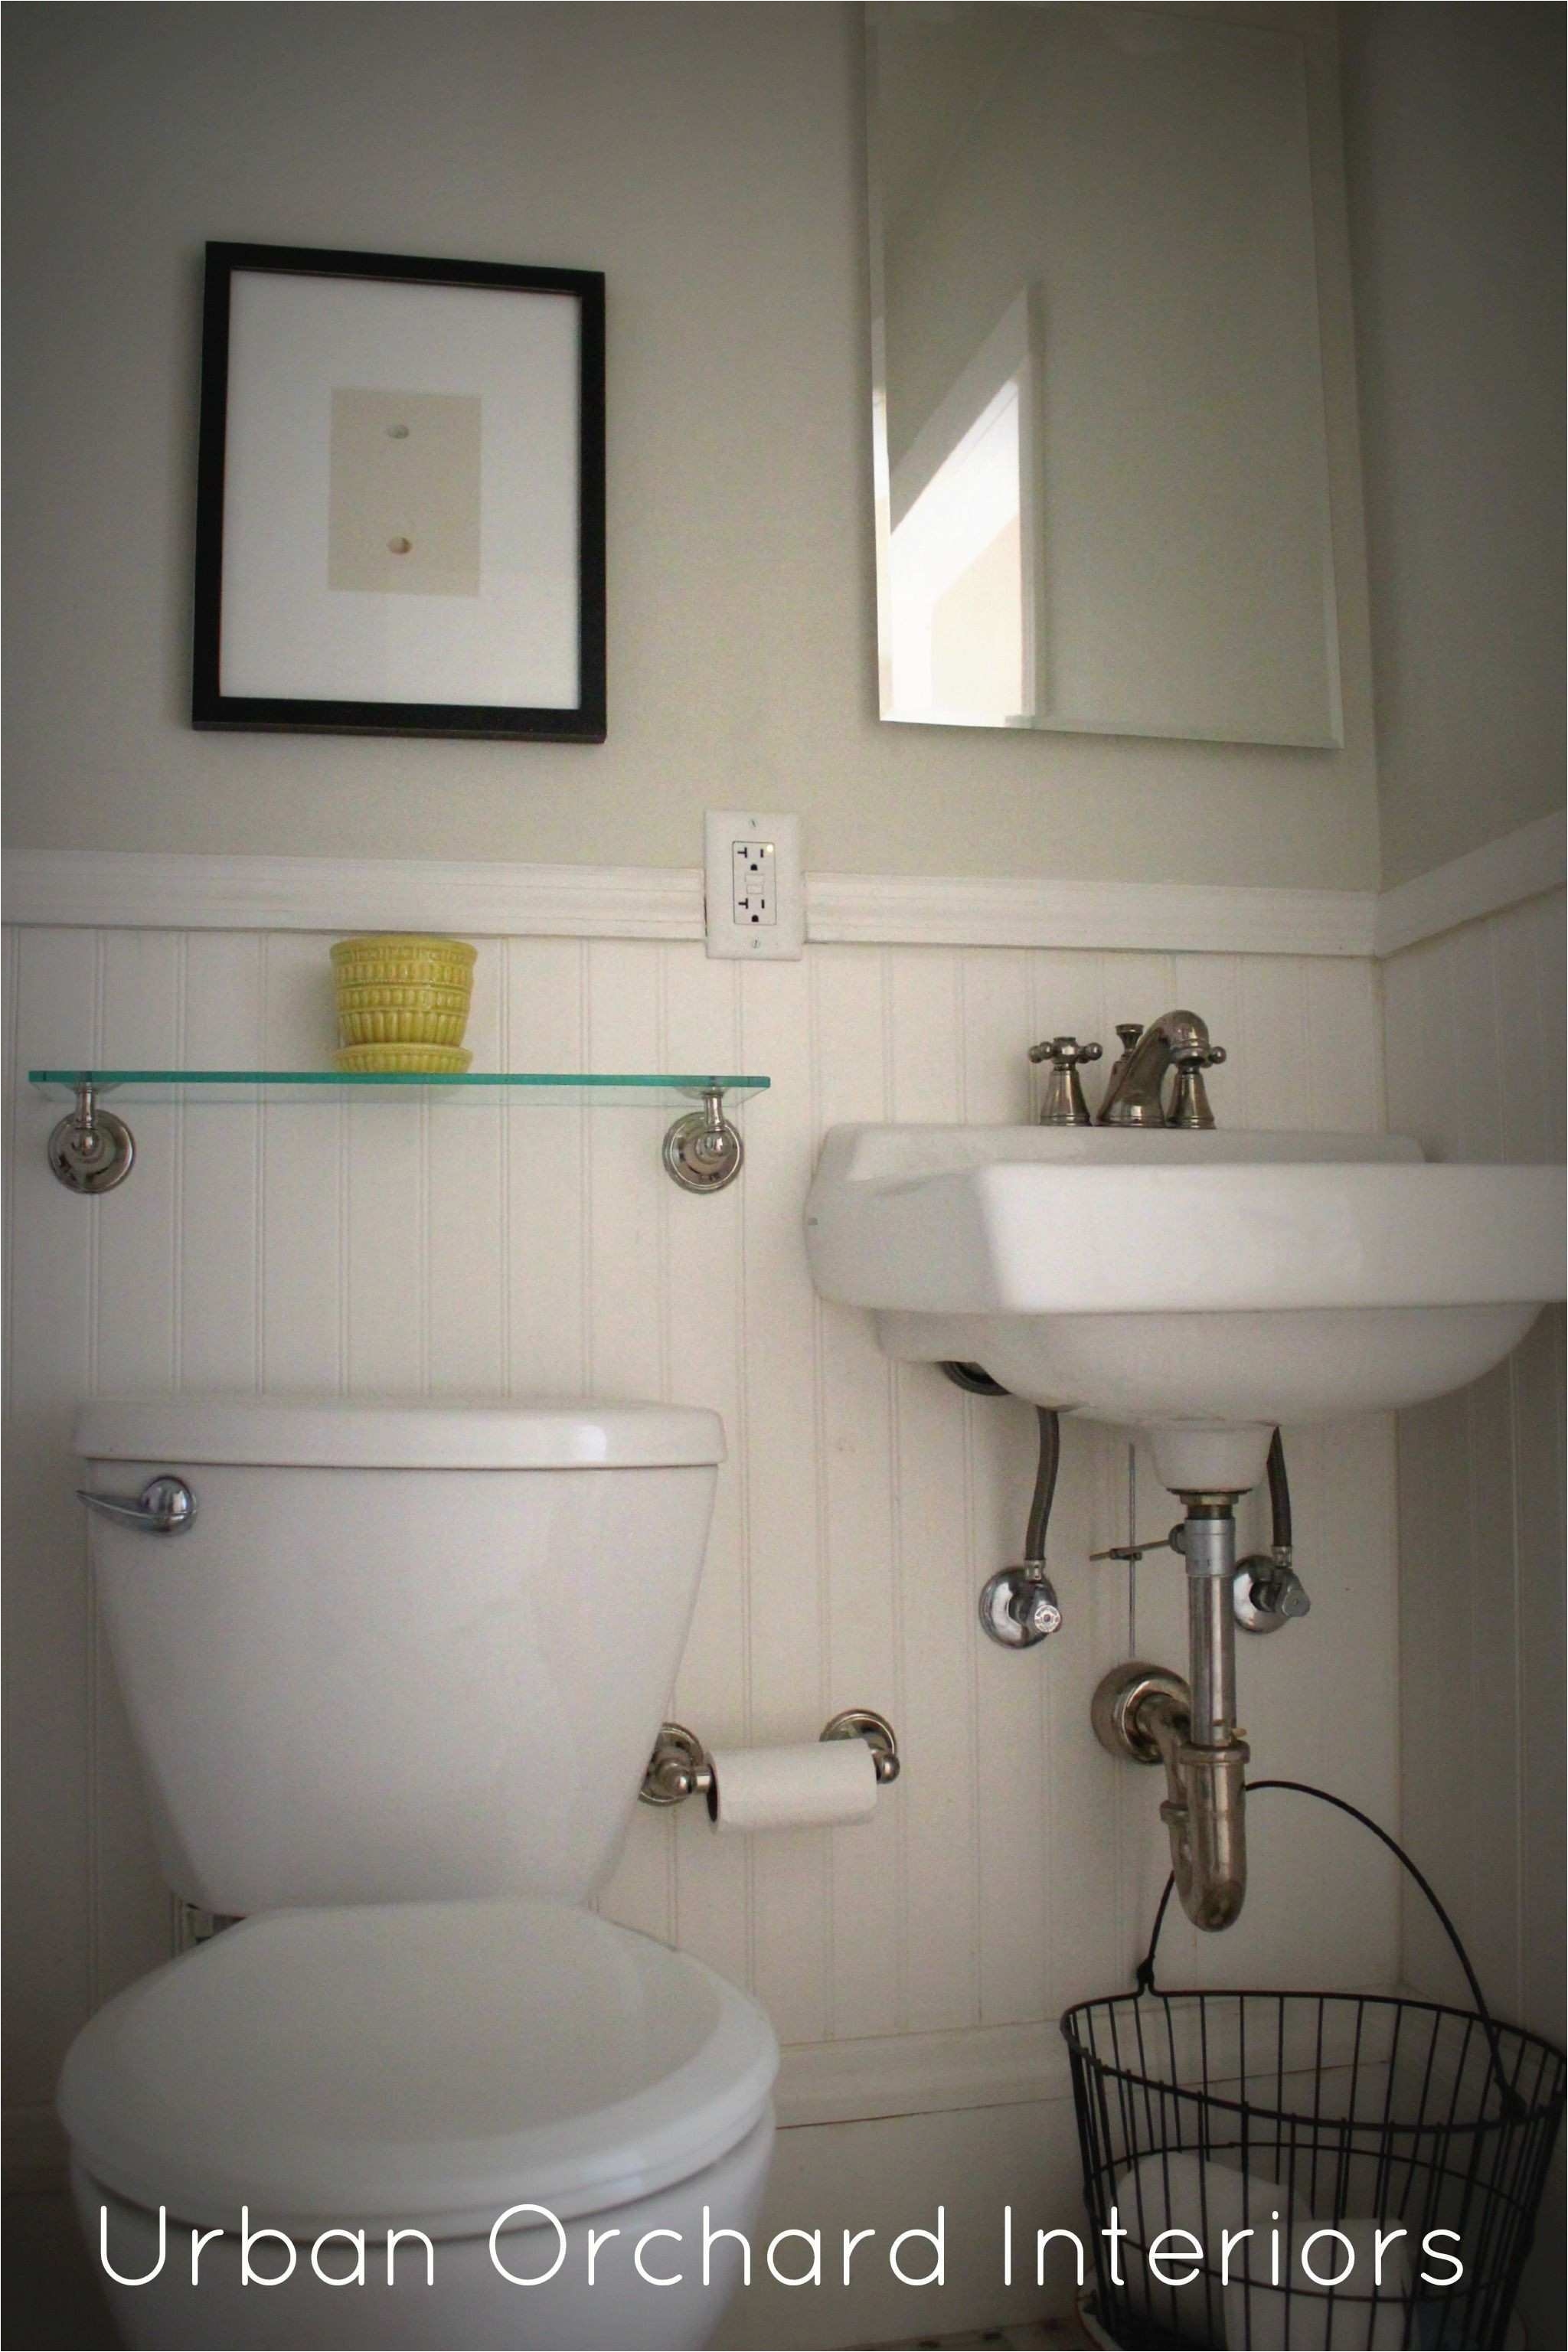 Design Ideas for Bathroom Shelves New Home Bathroom Designs Home Design Nahfa New Home Design Ideas